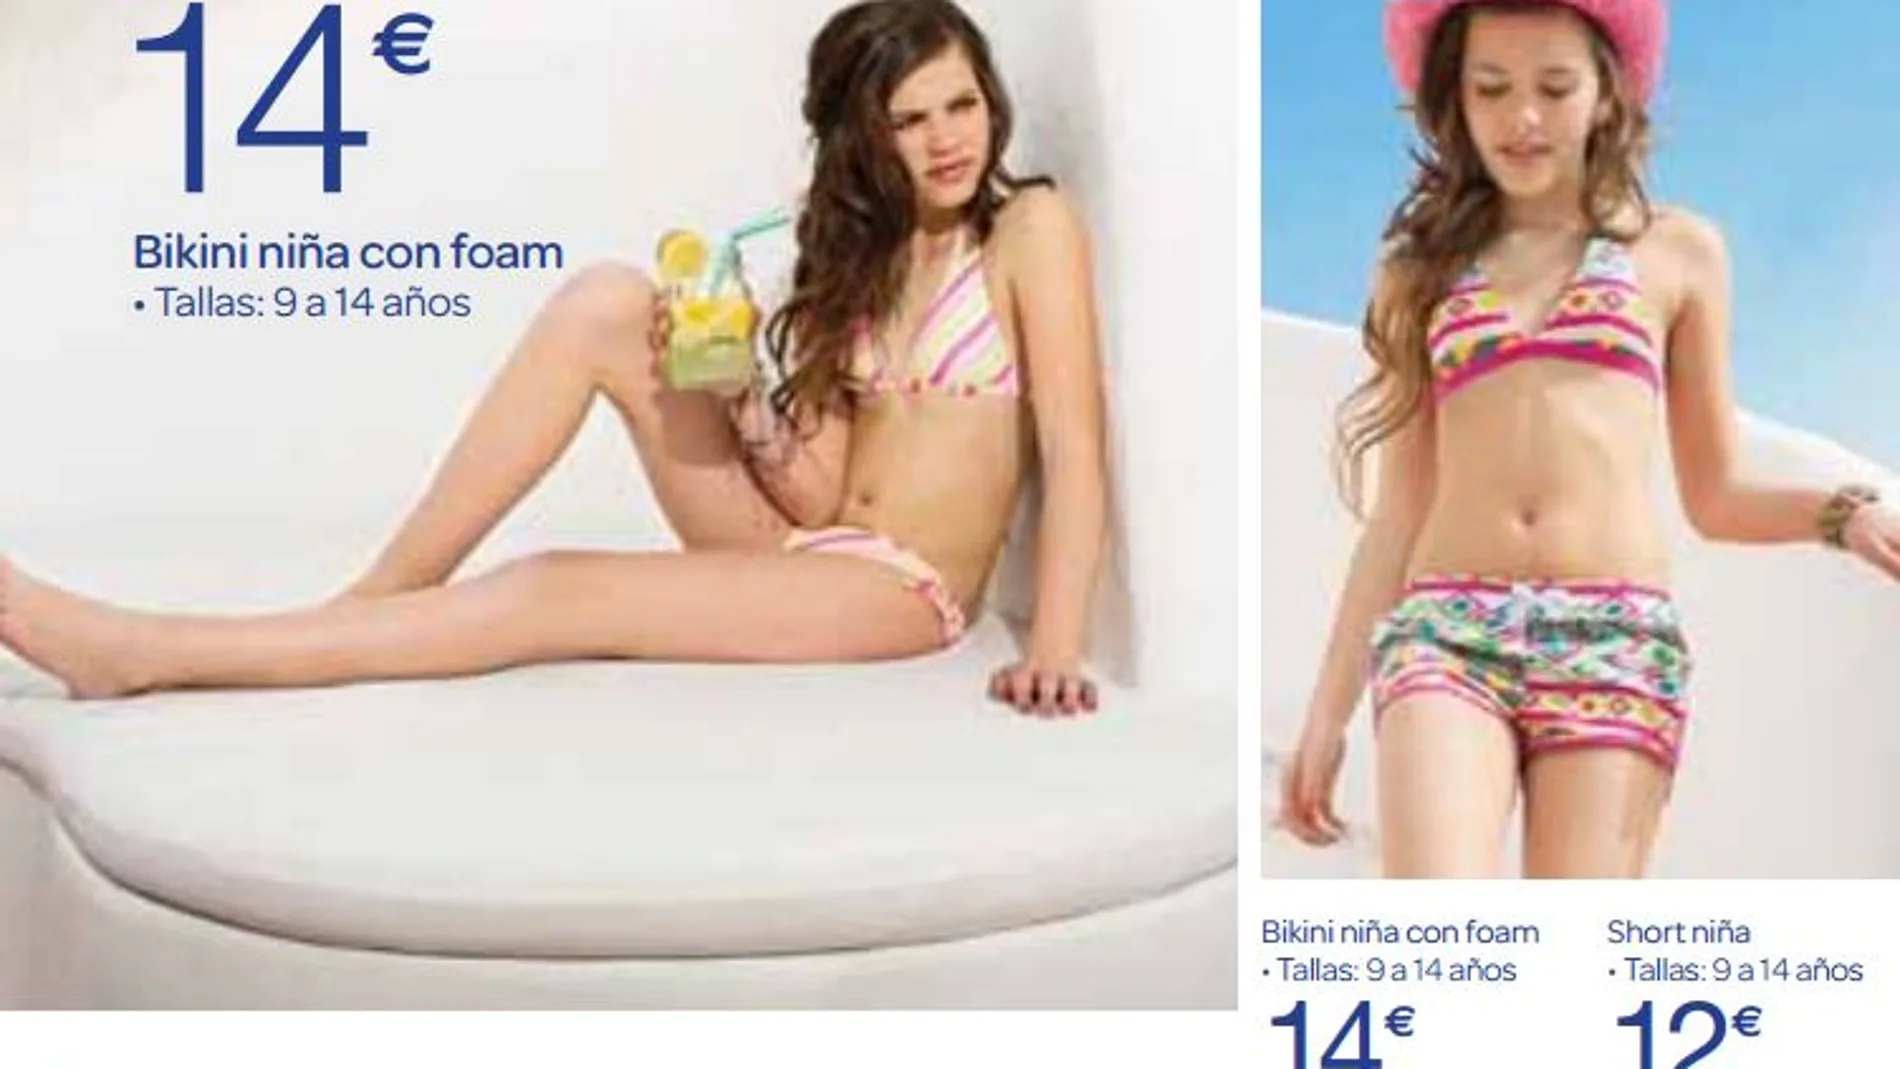 Imagen del catálogo en el que se publicita el bikini con relleno